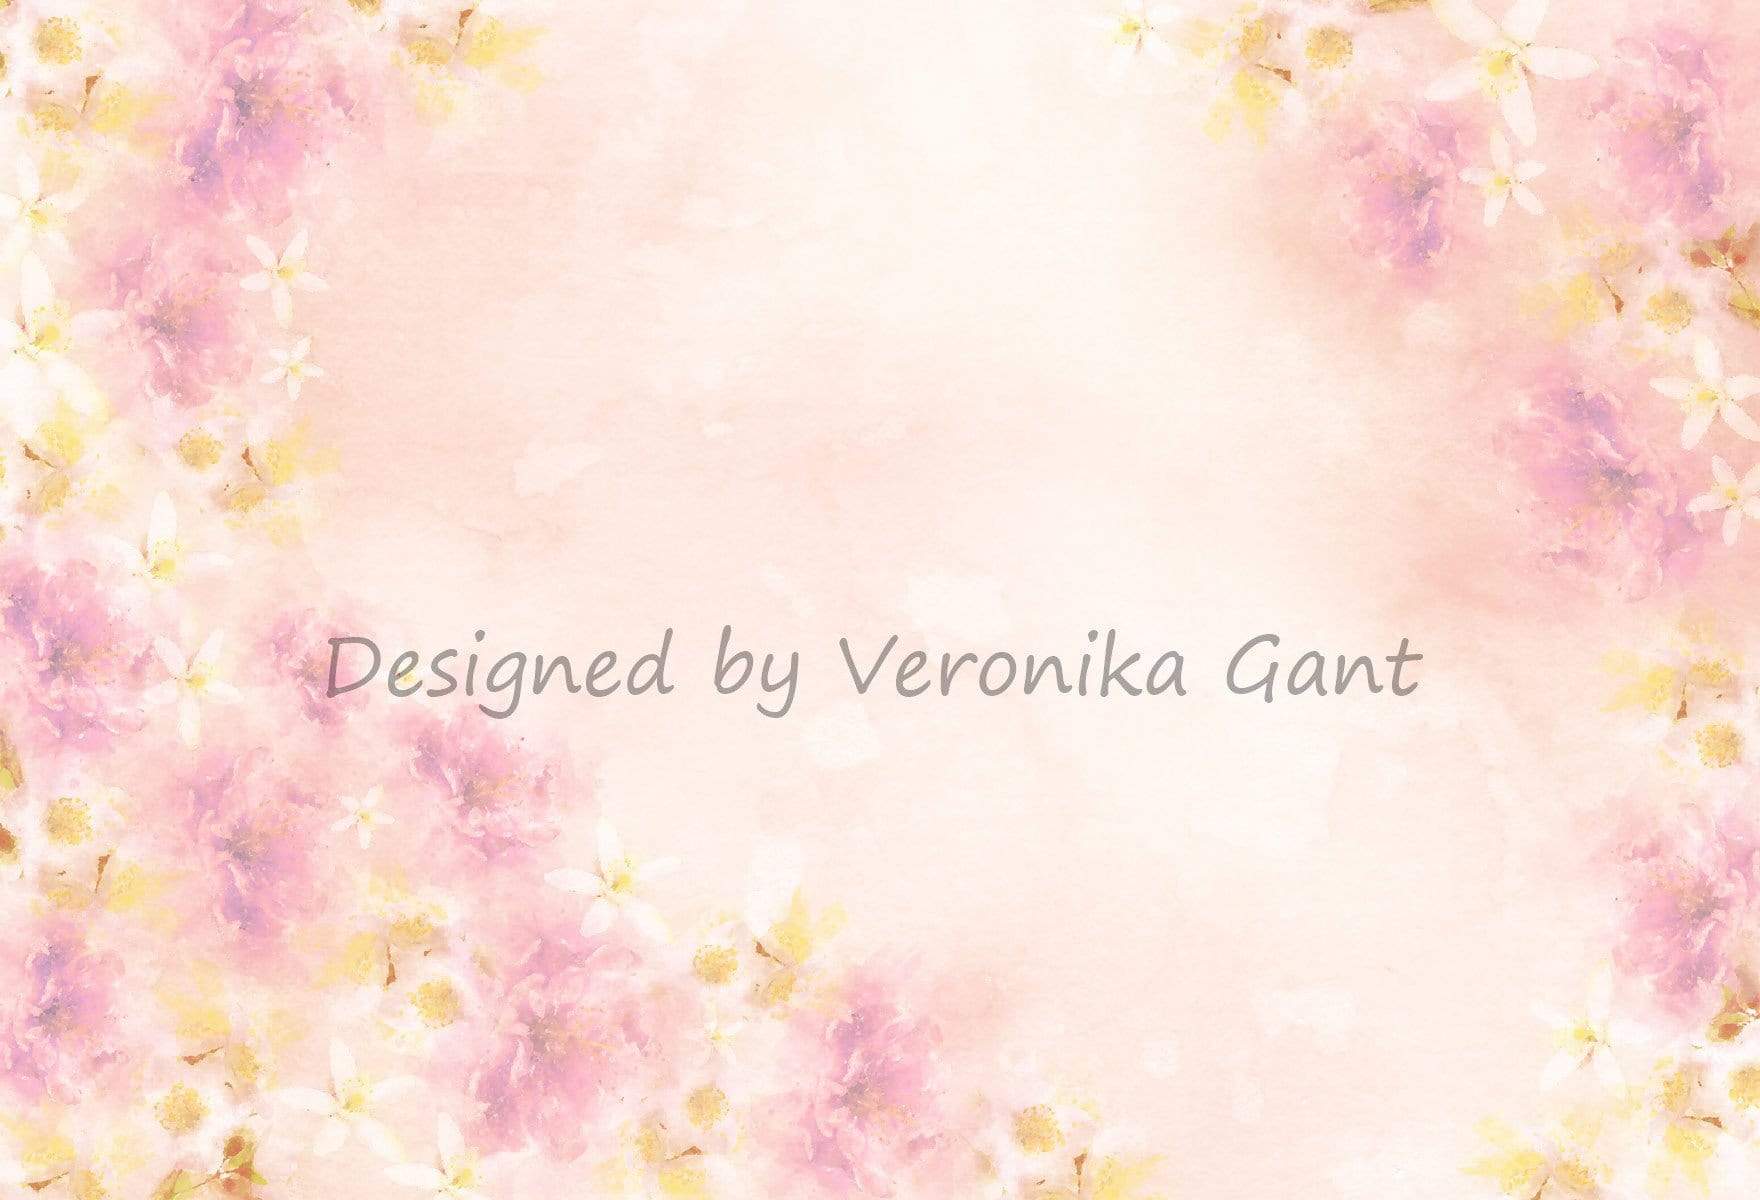 Kate ファインアート水彩画ピンクの花の抽象的な背景 のデザインですVeronika Gant